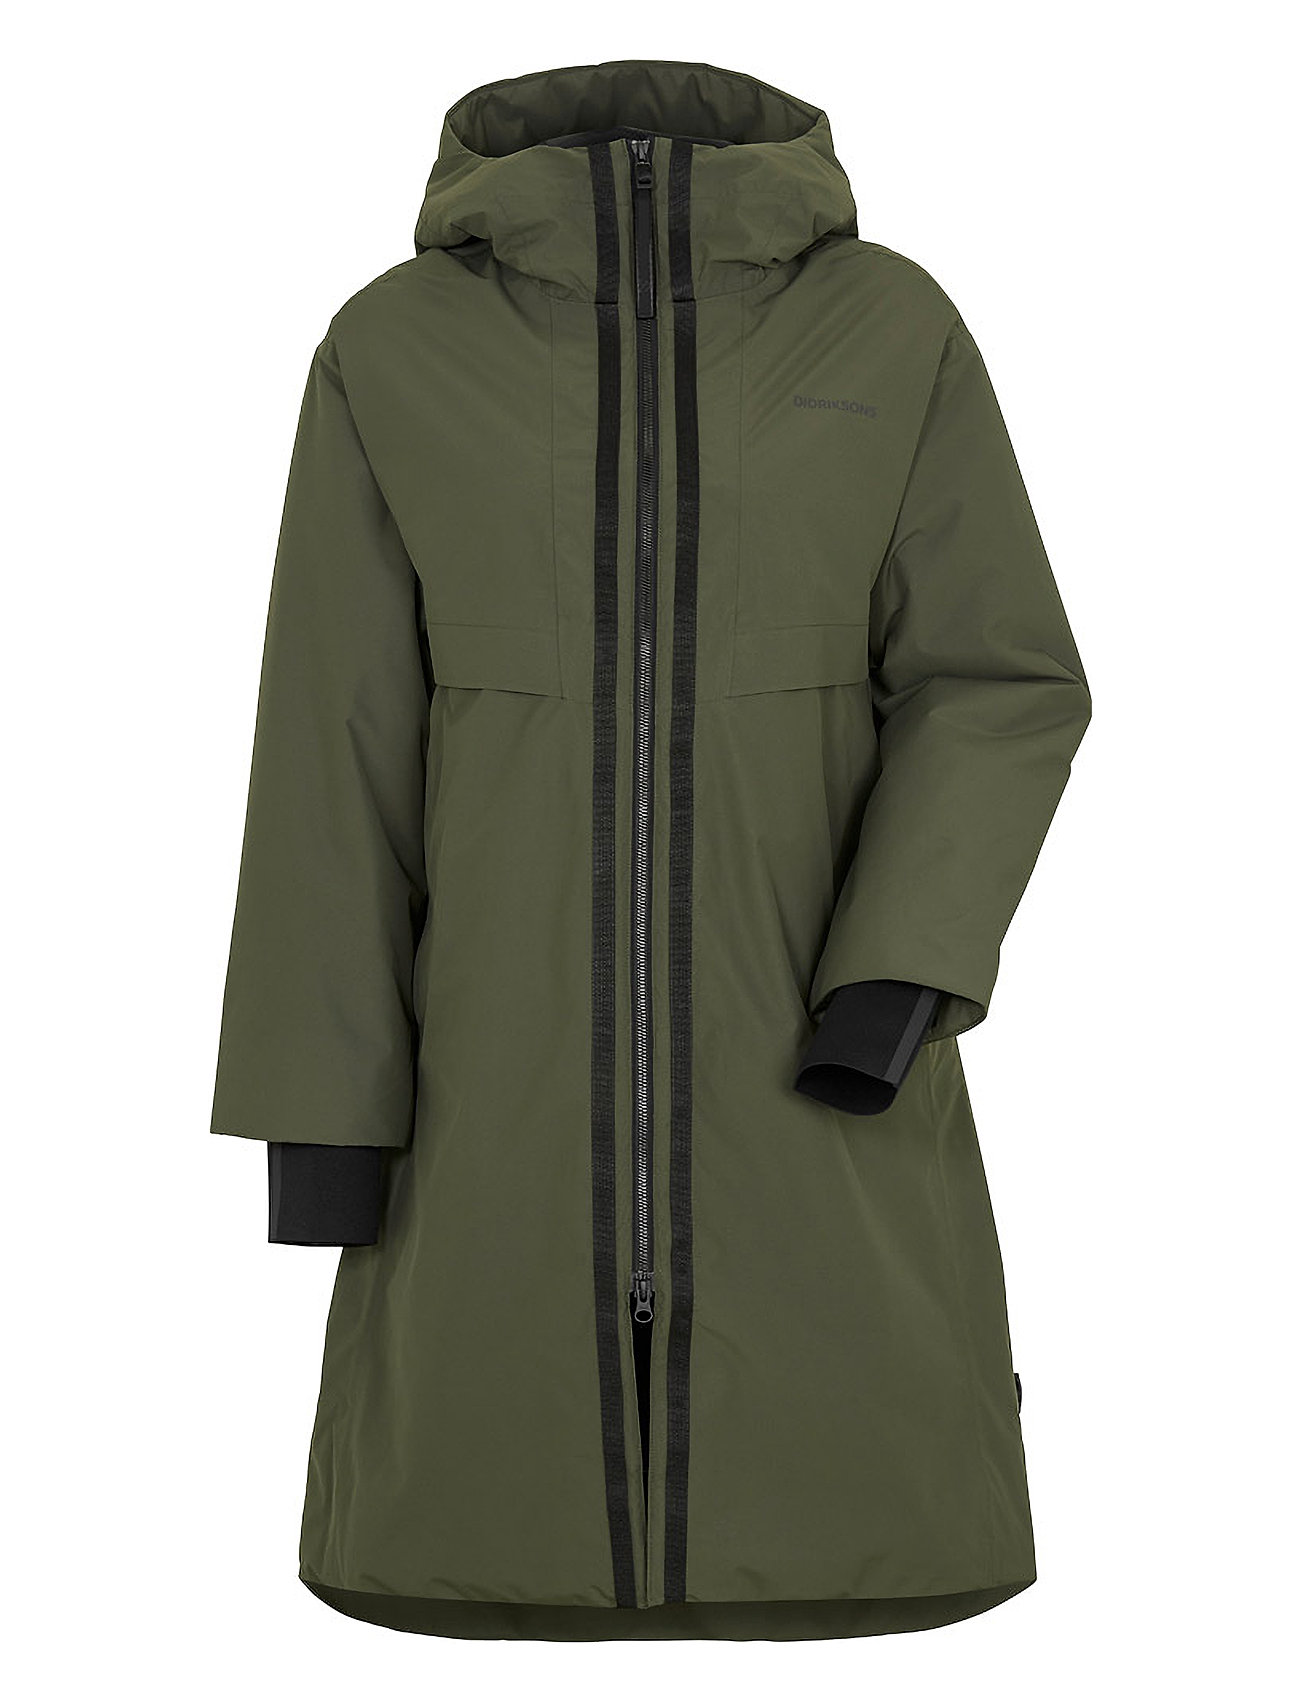 4 at Aino – – jackets shop Parka coats Booztlet Didriksons Wns &